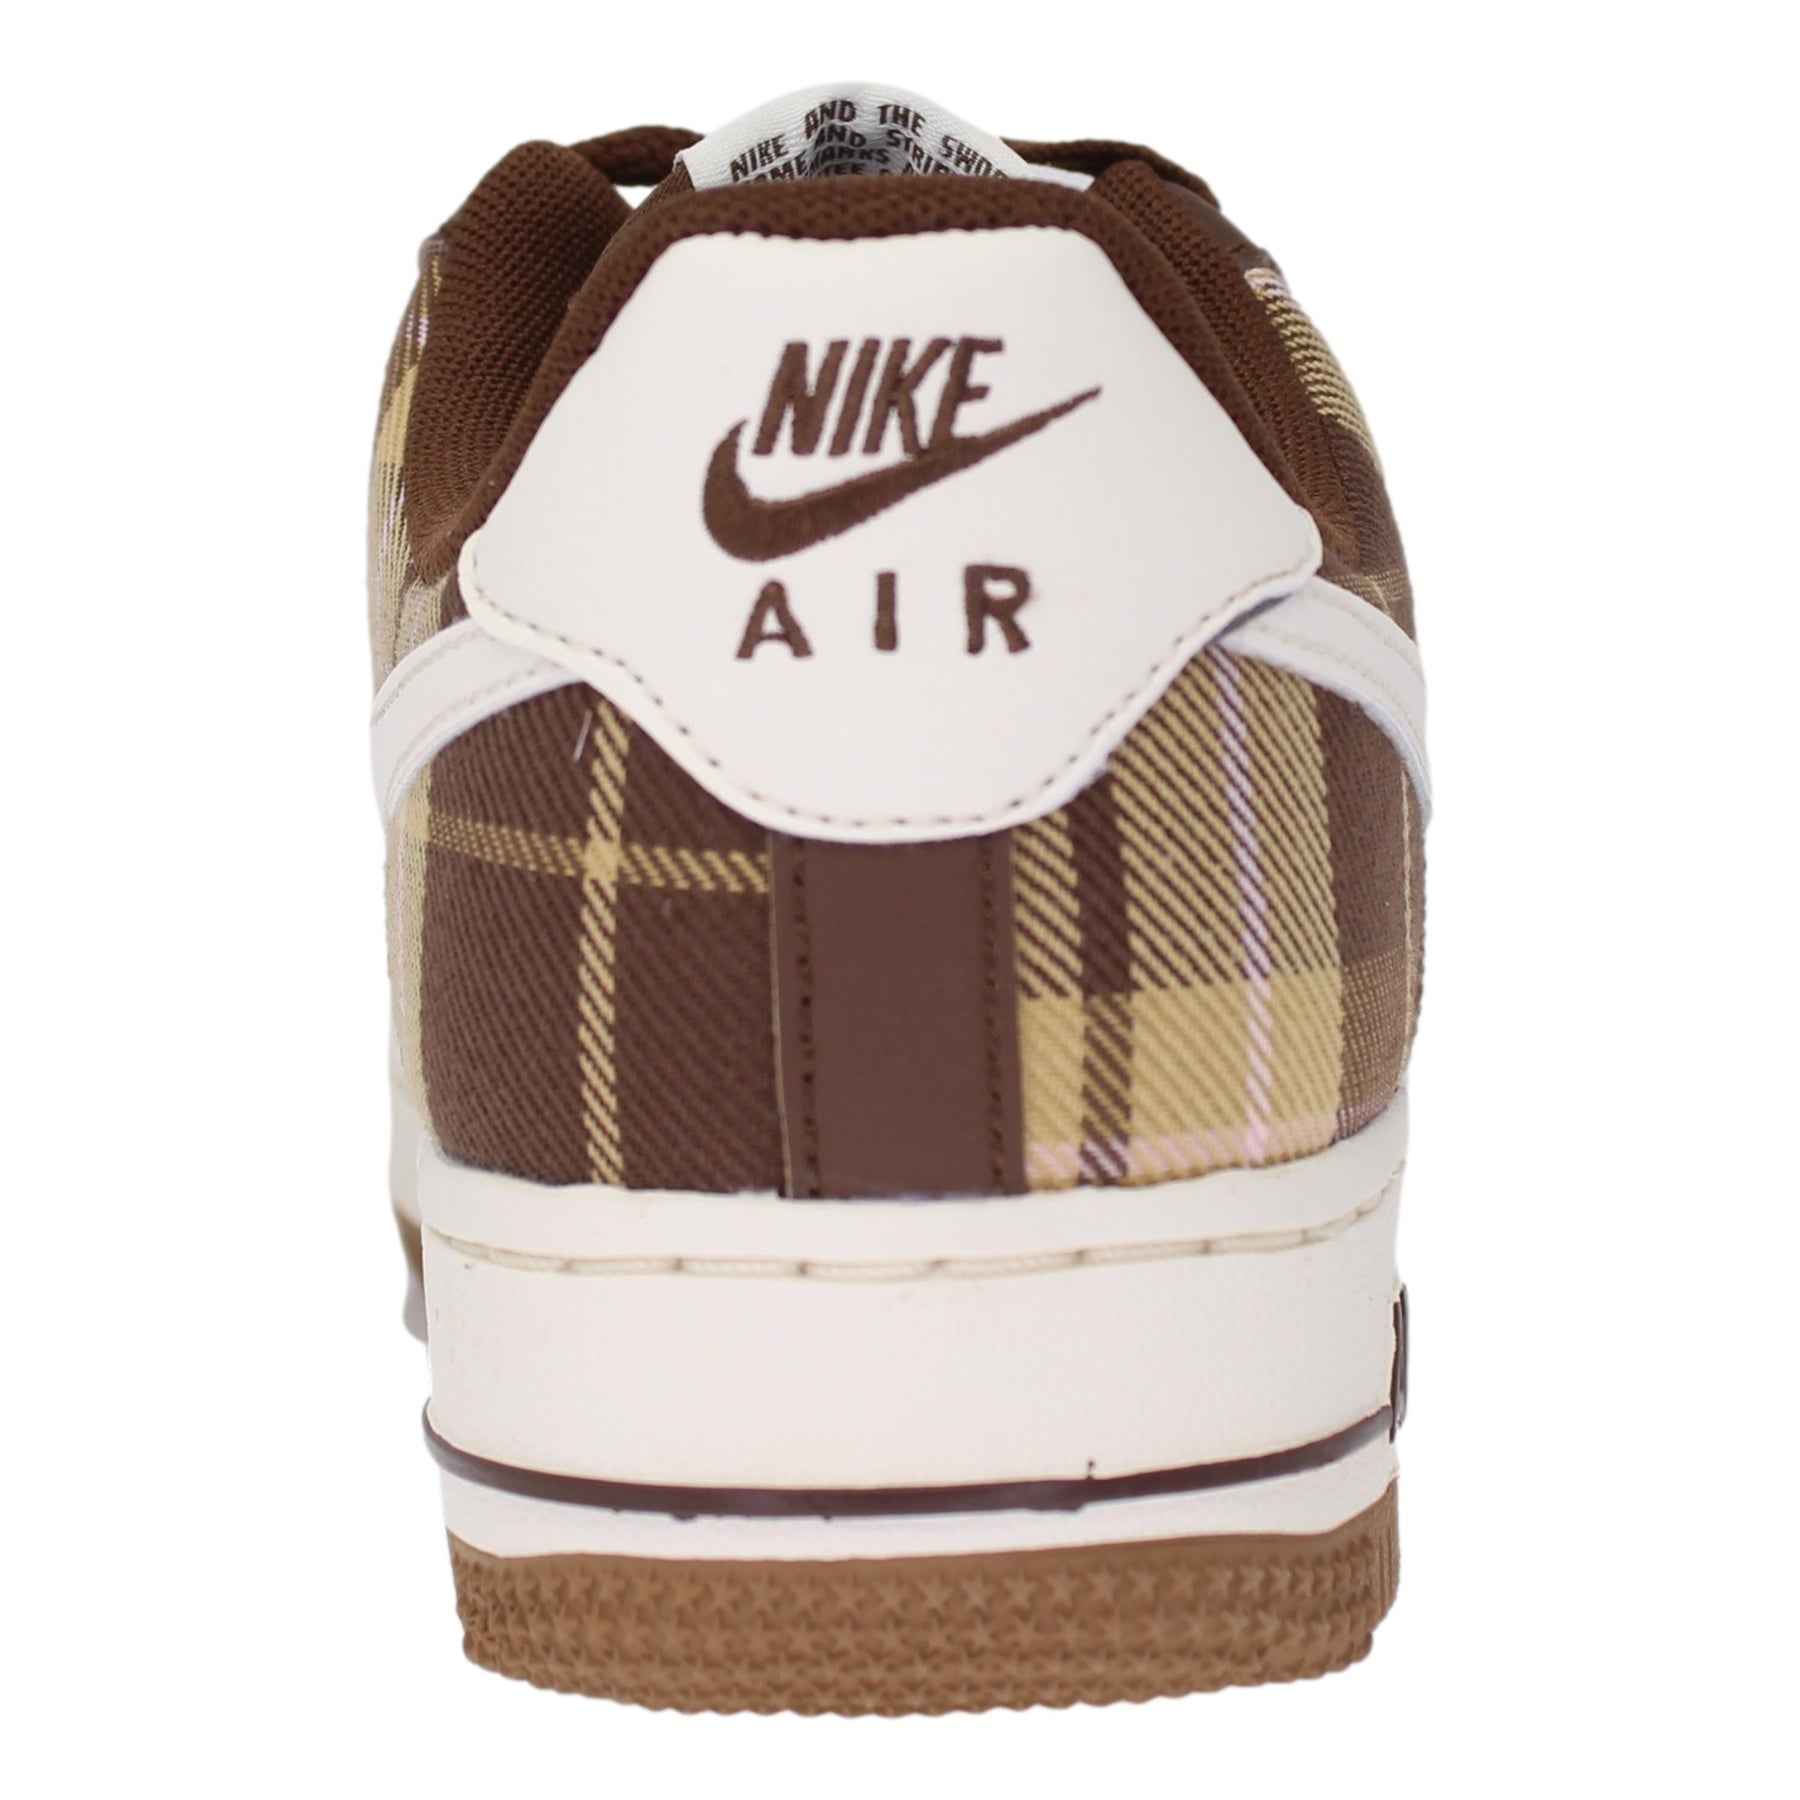 Nike AIR FORCE 1 MID '07 LX 'Brown Plaid' Brown/Beige